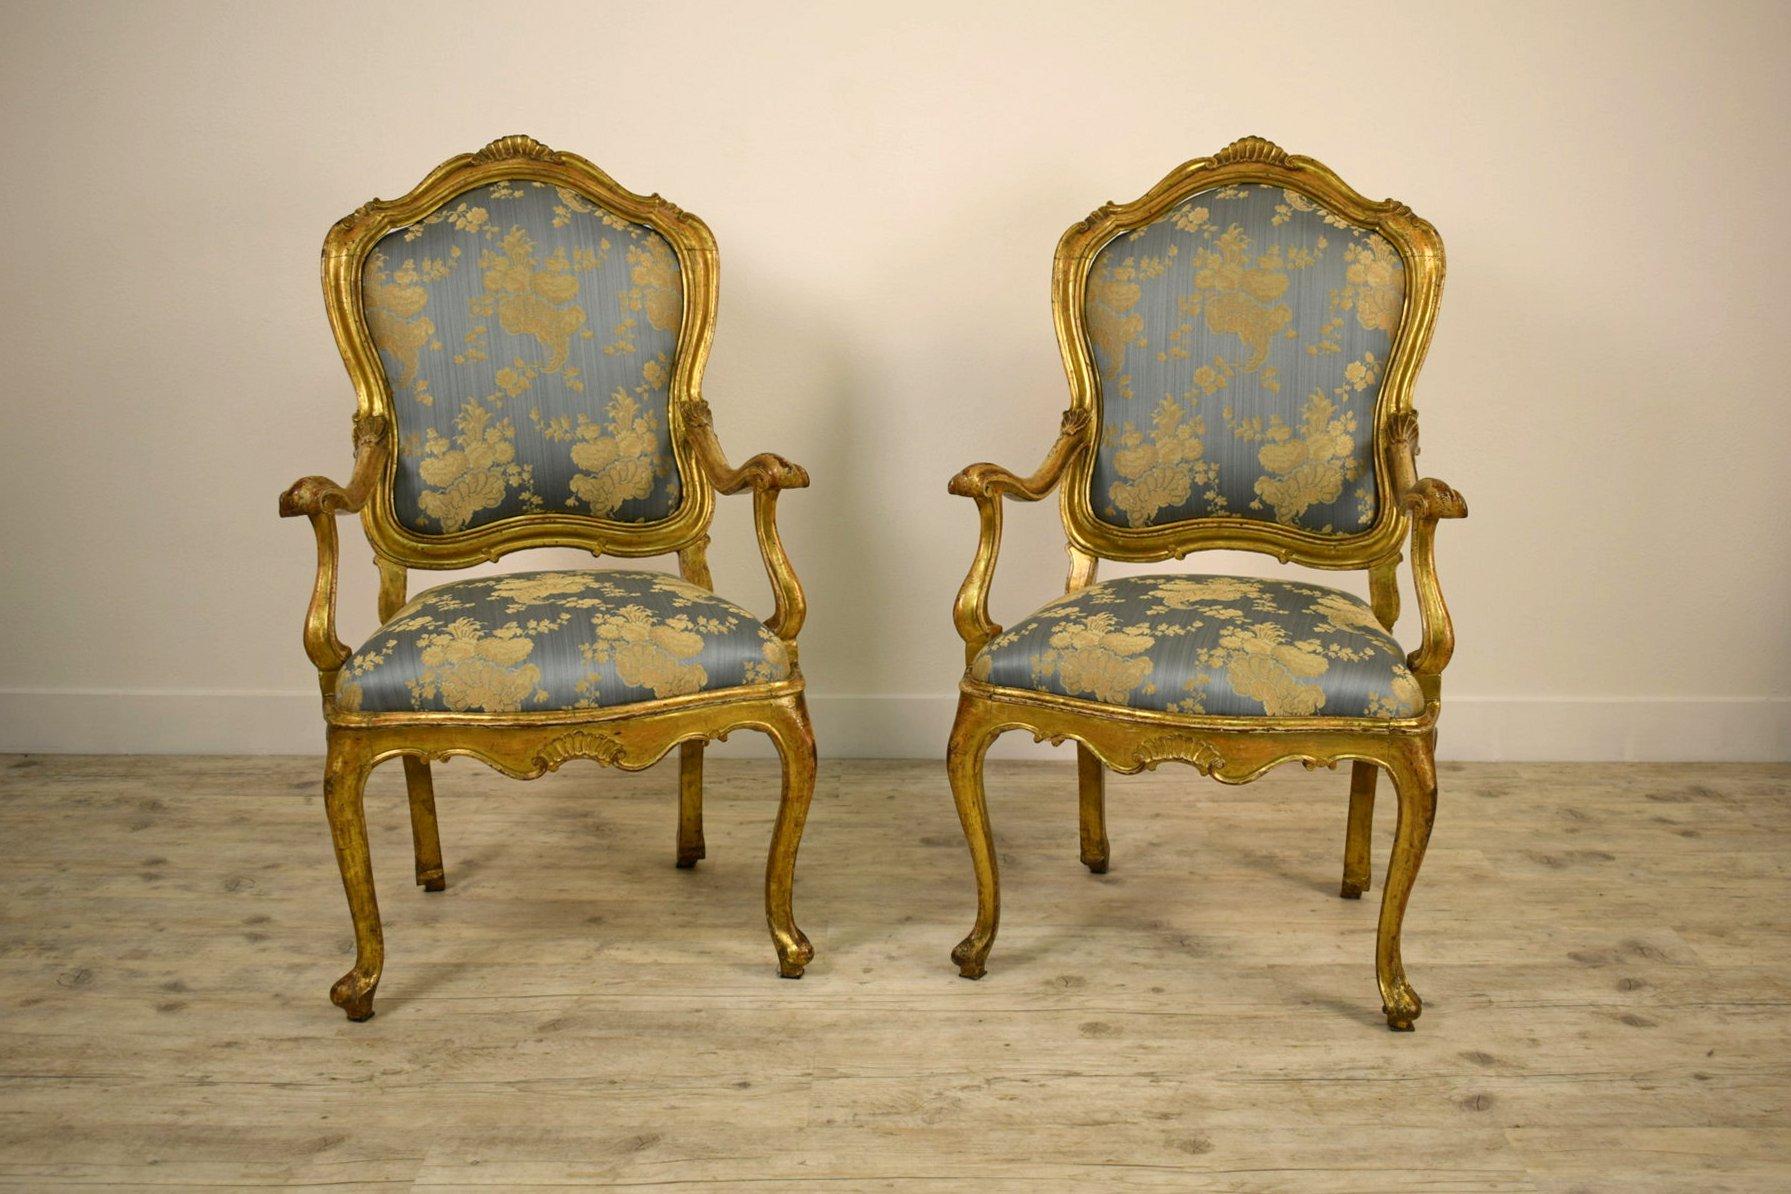 Couple de fauteuils italiens en bois doré du 18e siècle

Cette paire de fauteuils raffinée et importante a été réalisée vers le milieu du XVIIIe siècle à Venise, en Italie, en bois doré sculpté et reflète les dictats stylistiques typiques du